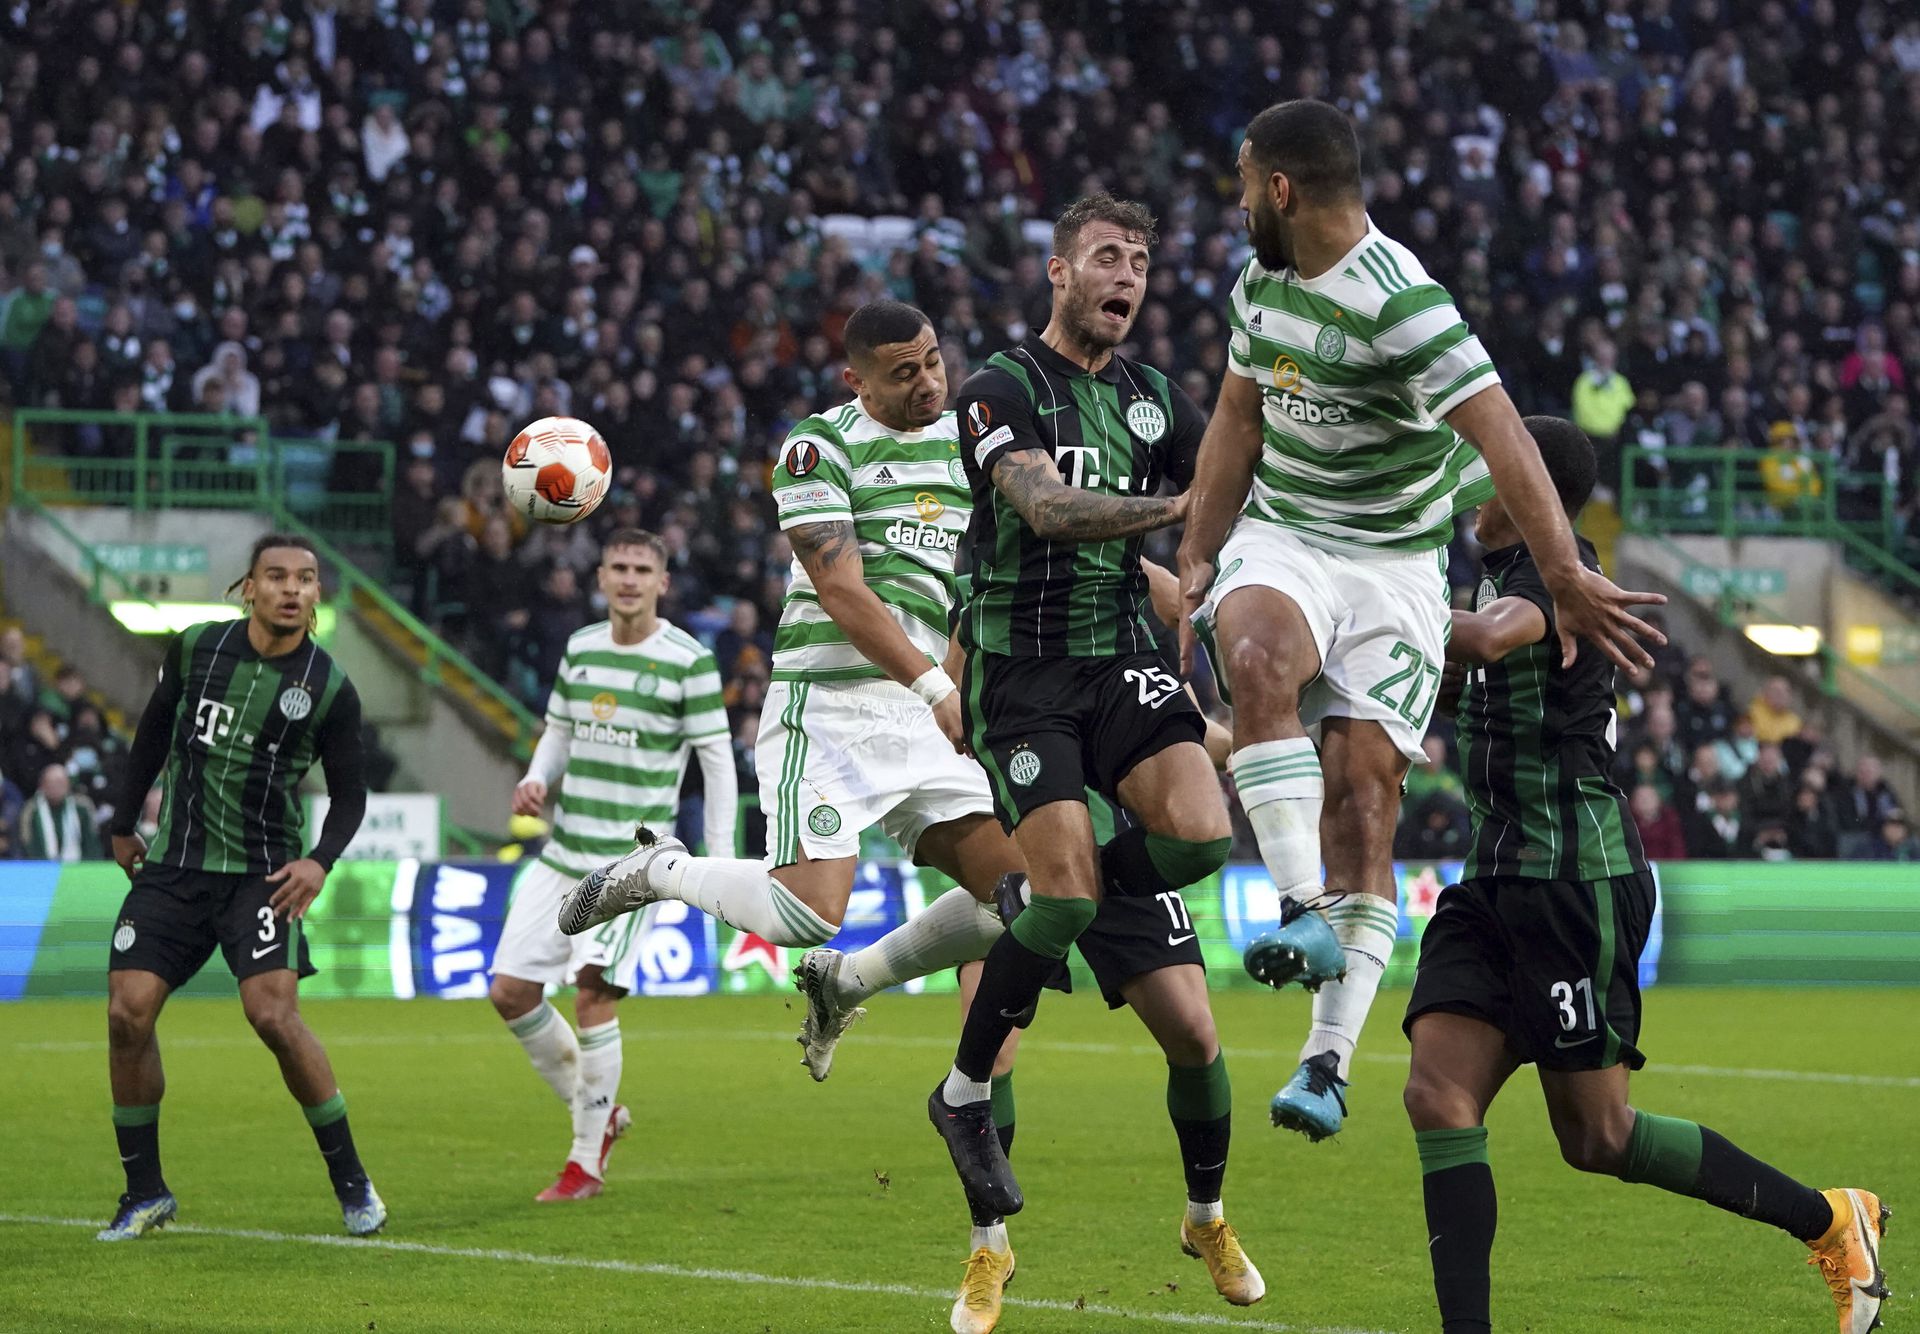 Glasgow-ban 2-0-s vereséget szenvedett a Fradi / Fotó: MTI/AP/PA/Andrew Milligan